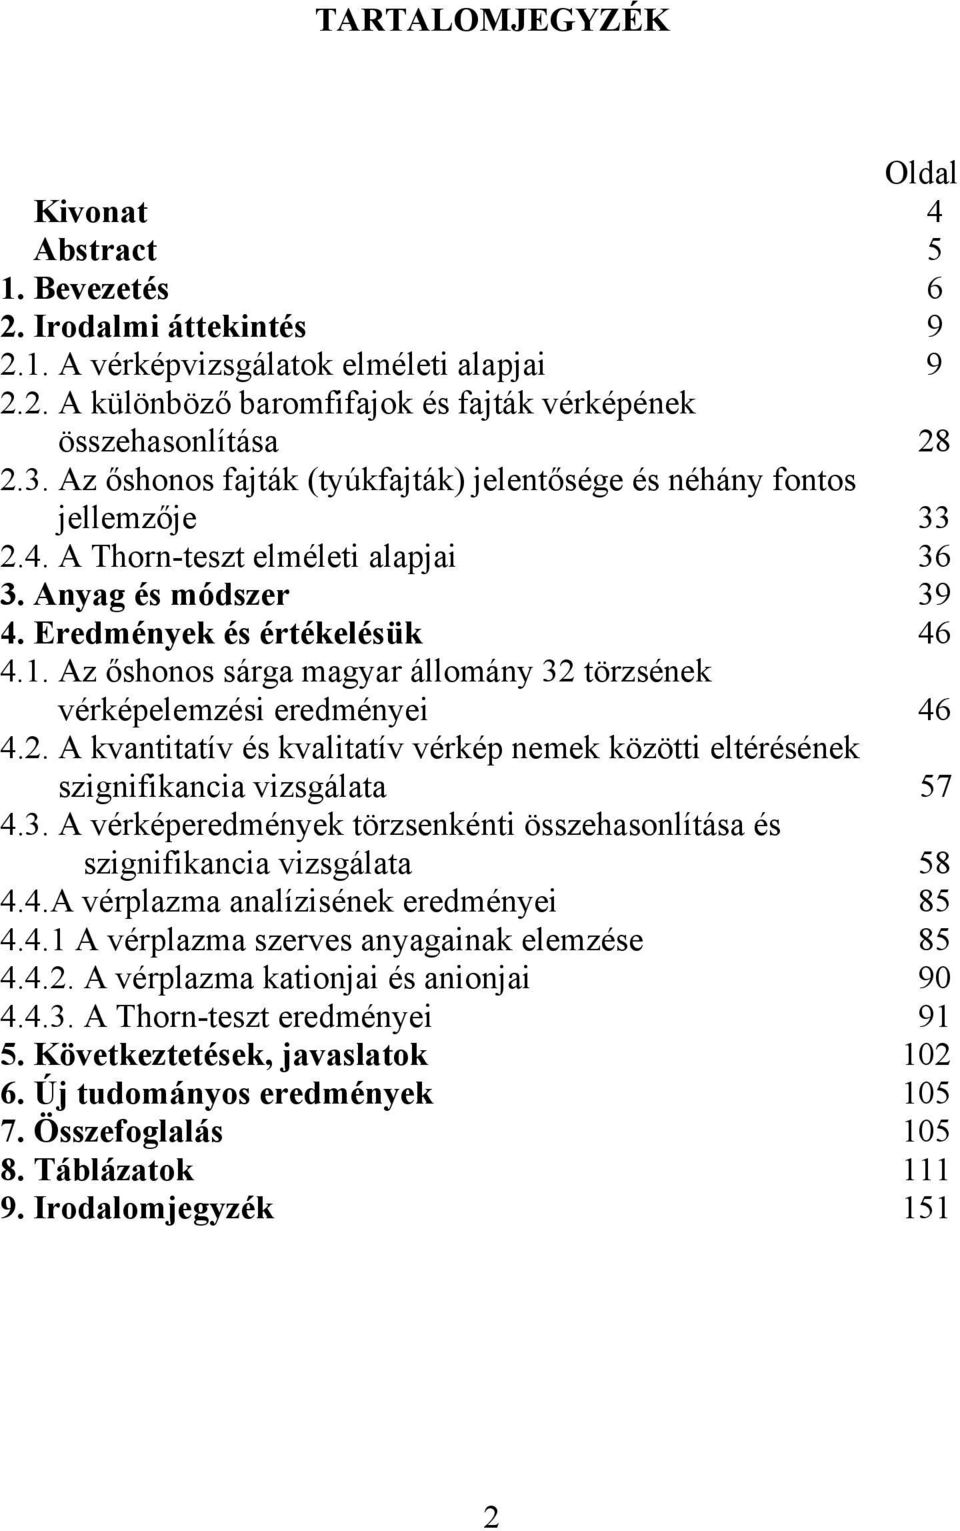 Az őshonos sárga magyar állomány 32 törzsének vérképelemzési eredményei 46 4.2. A kvantitatív és kvalitatív vérkép nemek közötti eltérésének szignifikancia vizsgálata 57 4.3. A vérképeredmények törzsenkénti összehasonlítása és szignifikancia vizsgálata 58 4.